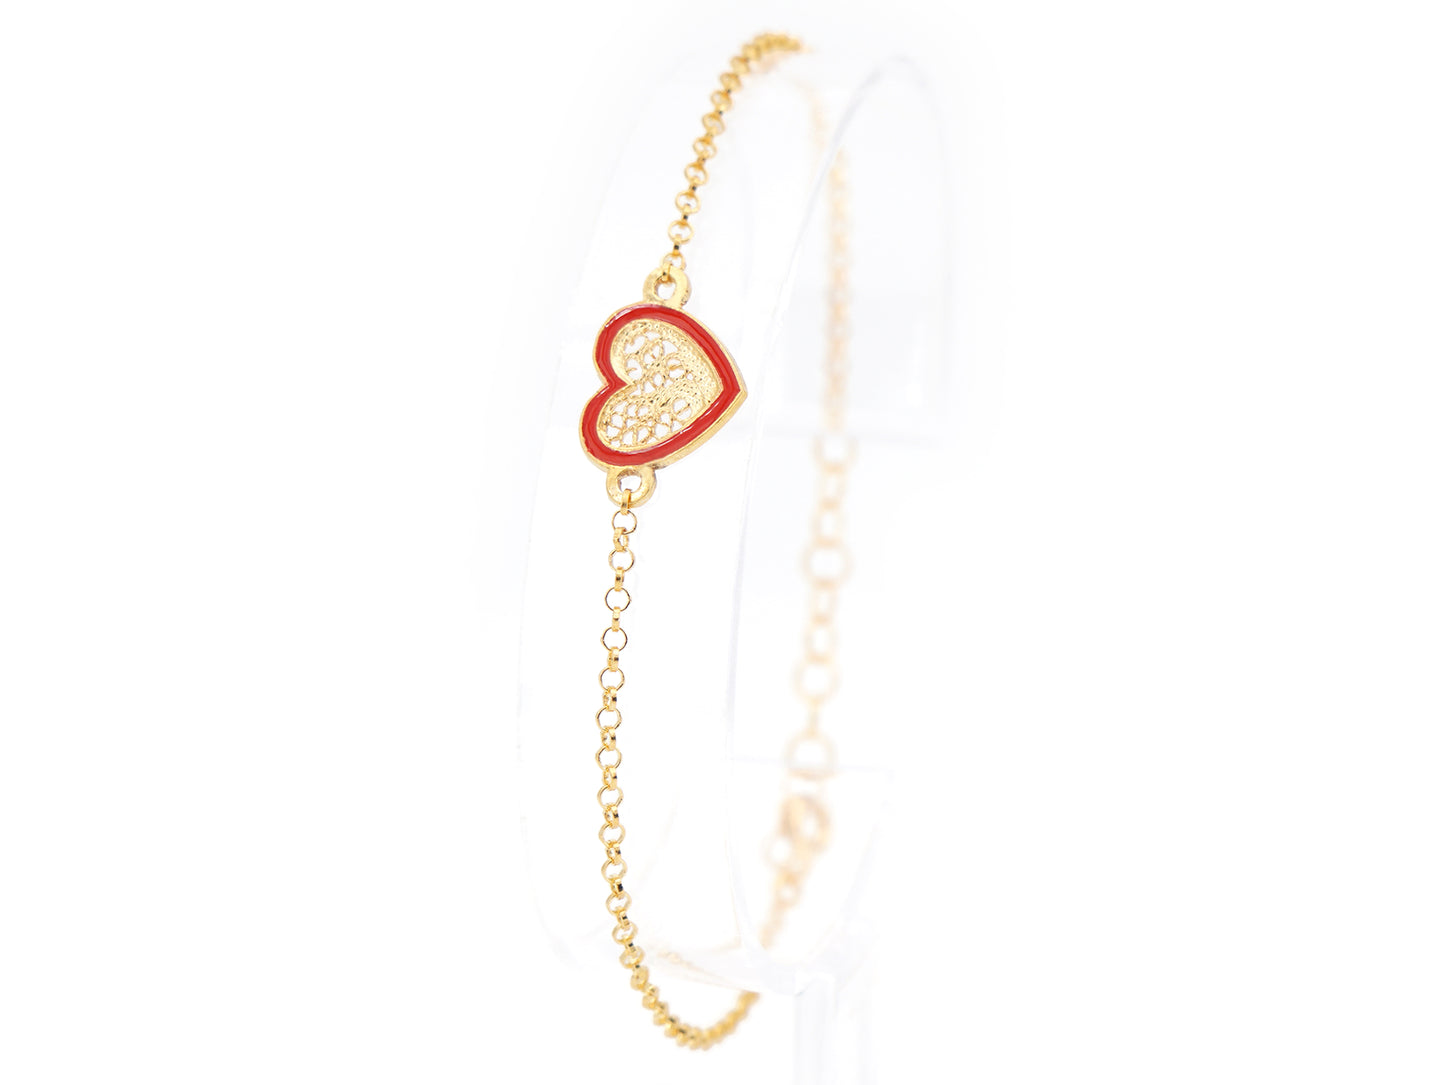 Pulseira Coração Pequeno Esmalte Vermelho, Filigrana Portuguesa, Prata de Lei 925 Dourada - Pulseira em exposição